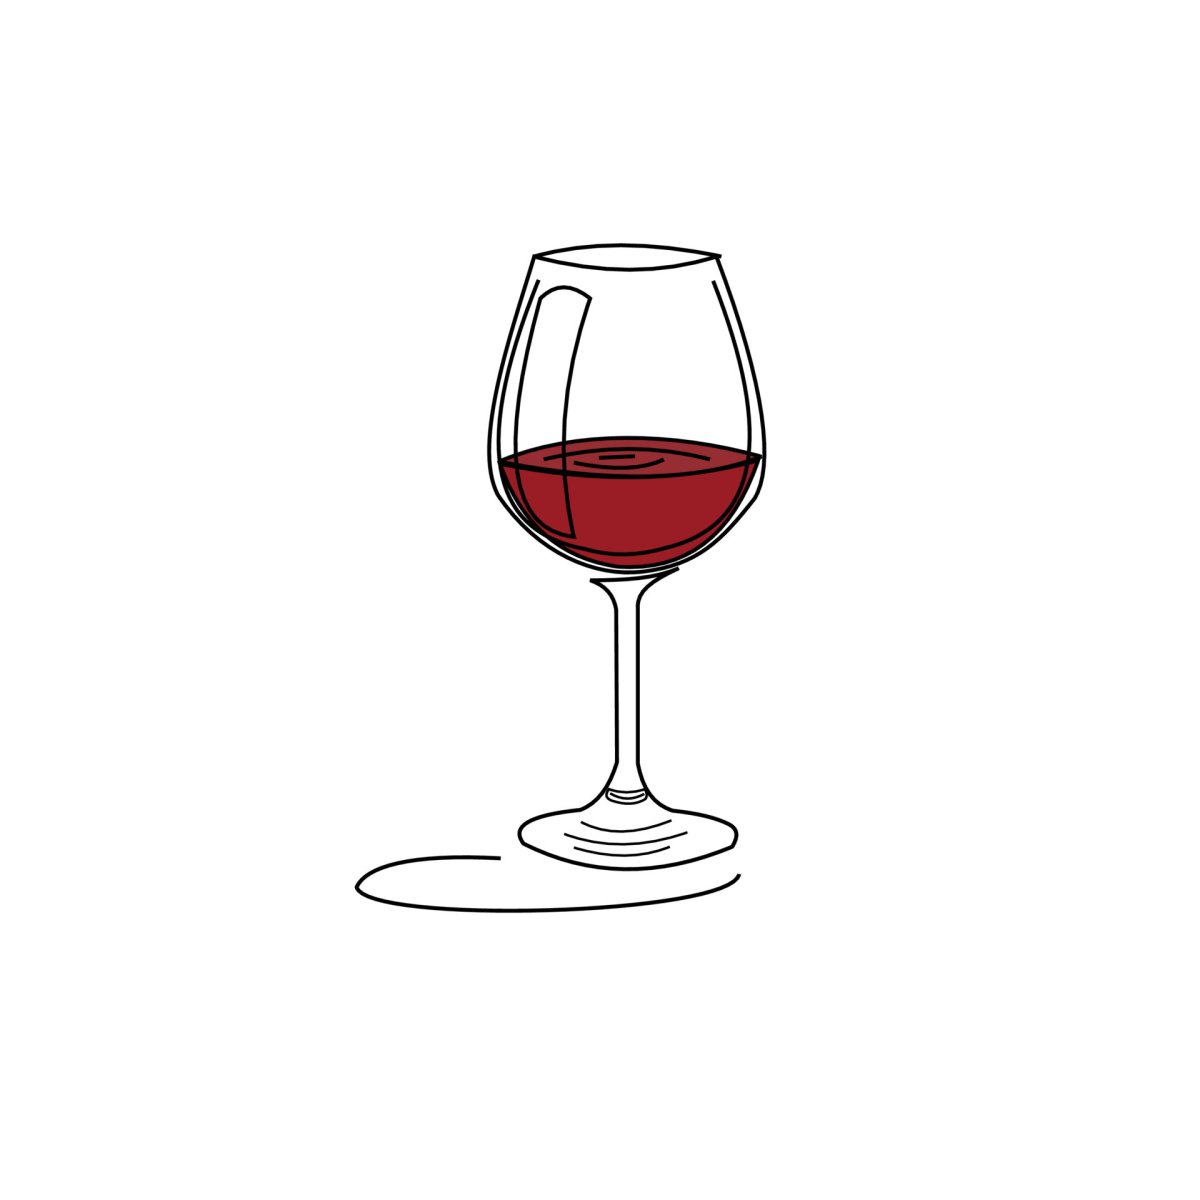 Нарисованный бокал вина